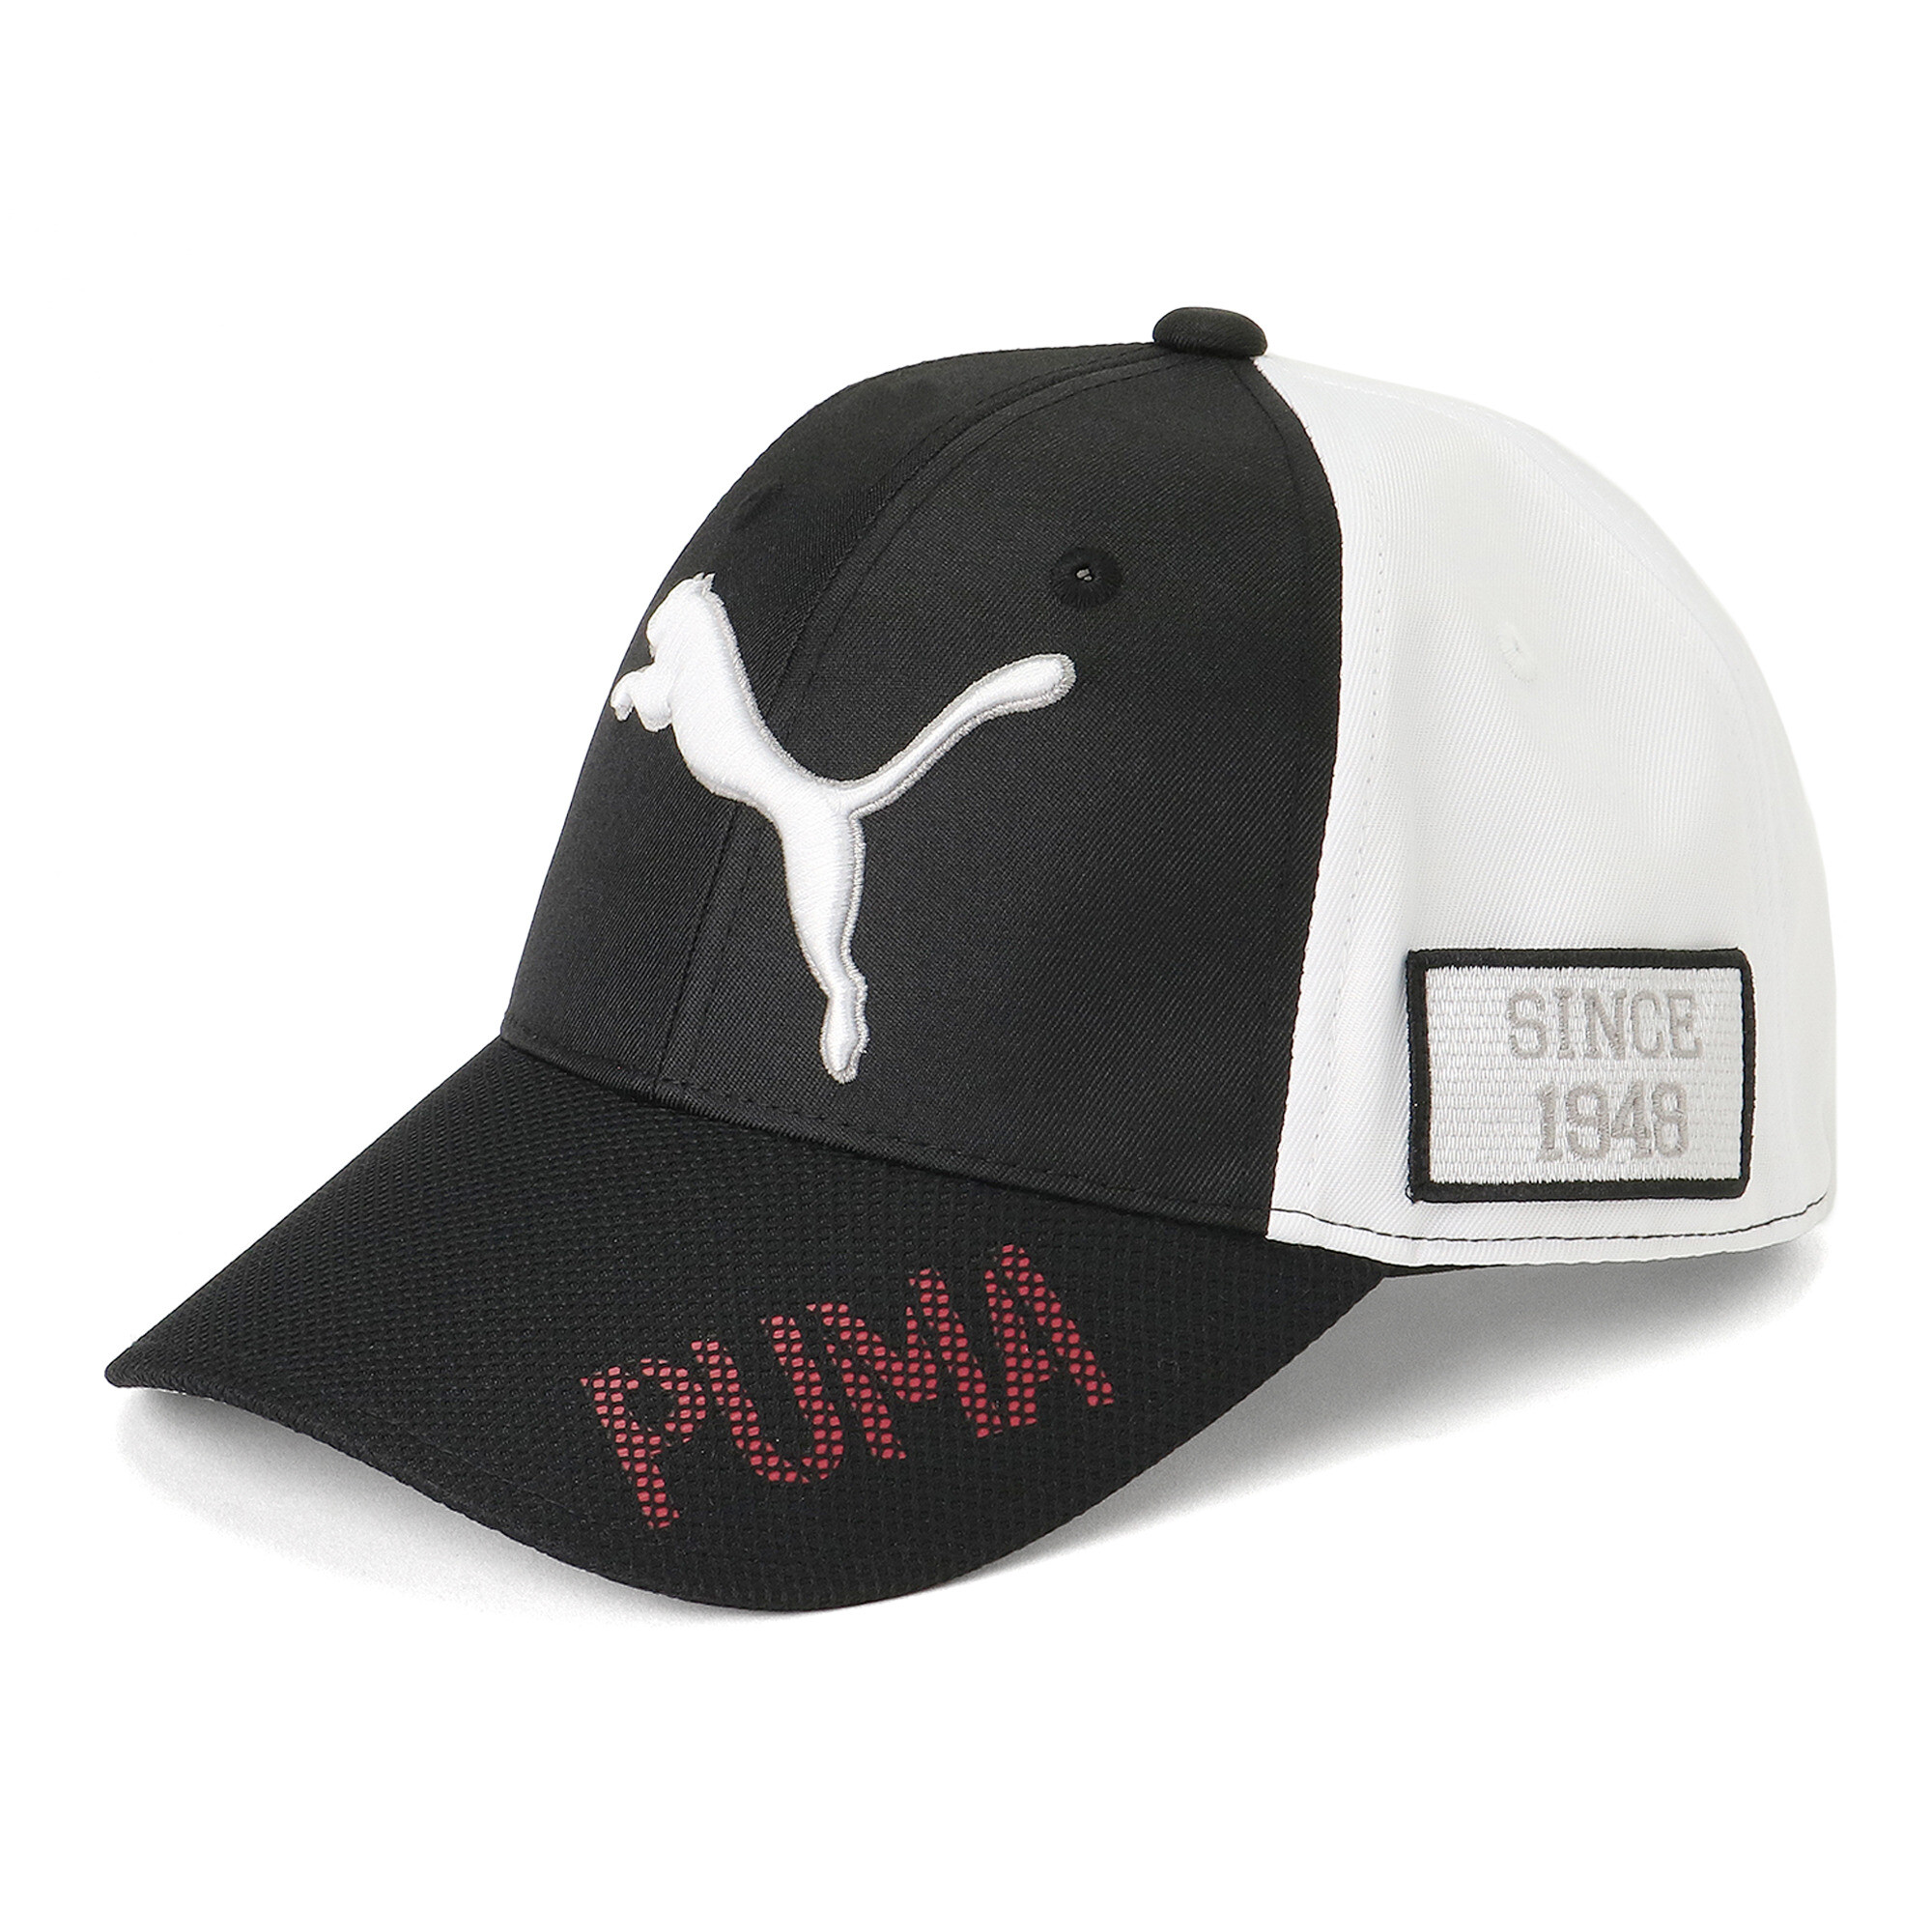 ＜プーマ公式通販＞ プーマ メンズ ゴルフ ツアー パフォーマンス キャップ メンズ PUMA Black-Bright White ｜PUMA.com画像